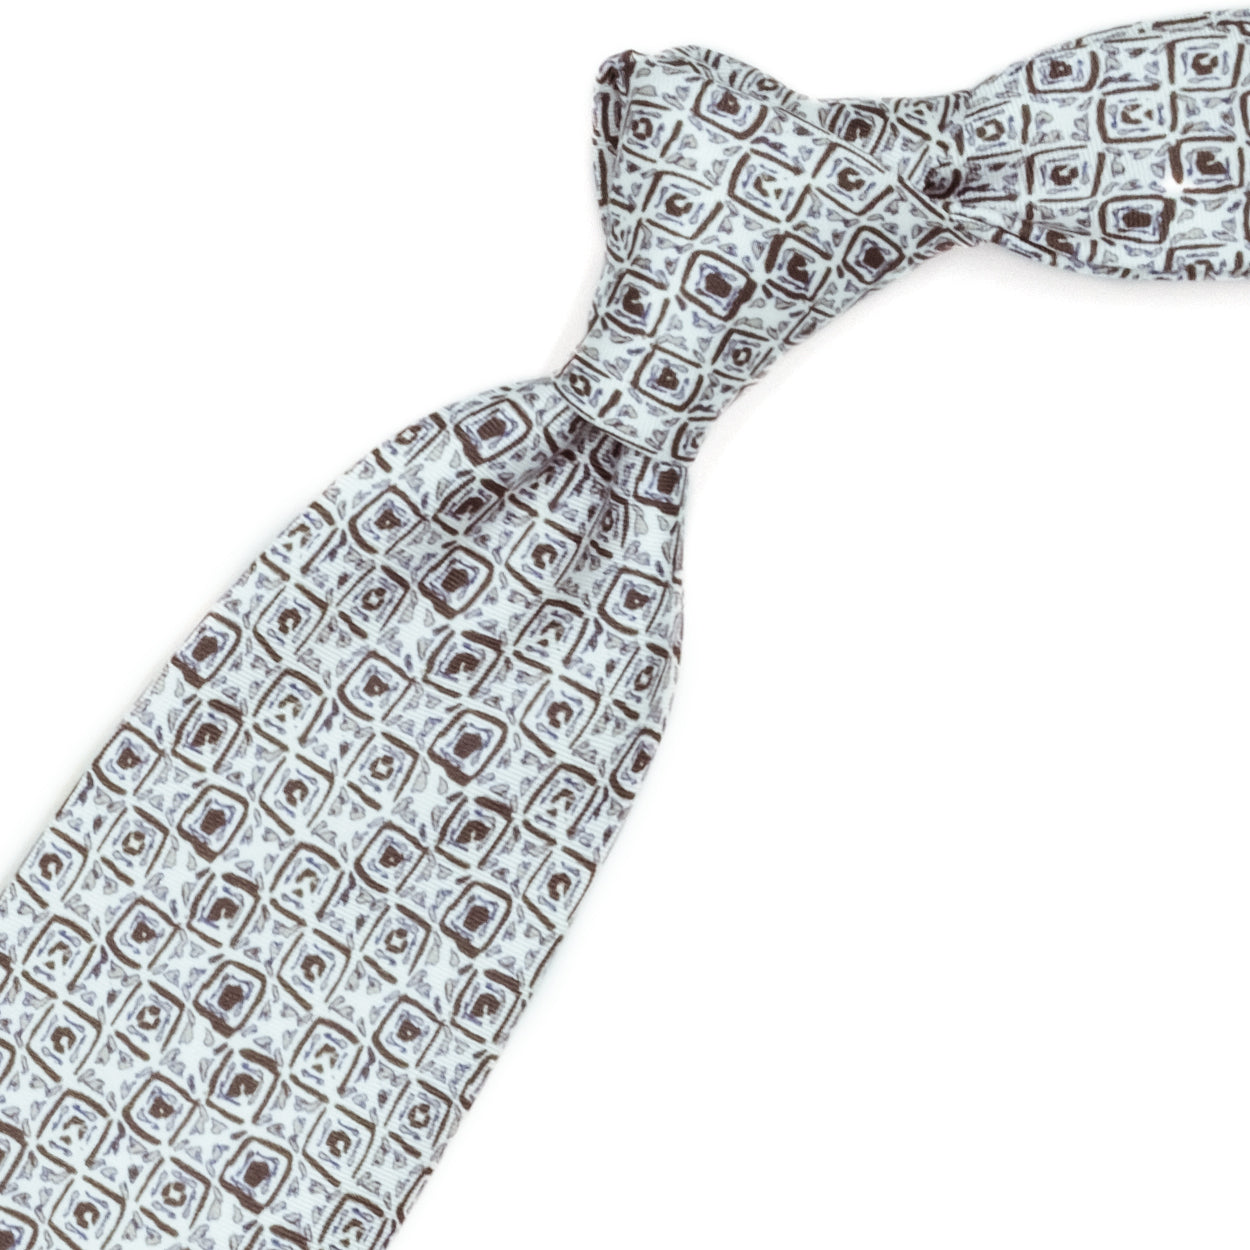 Cravatta bianca con pattern astratto beige e marrone